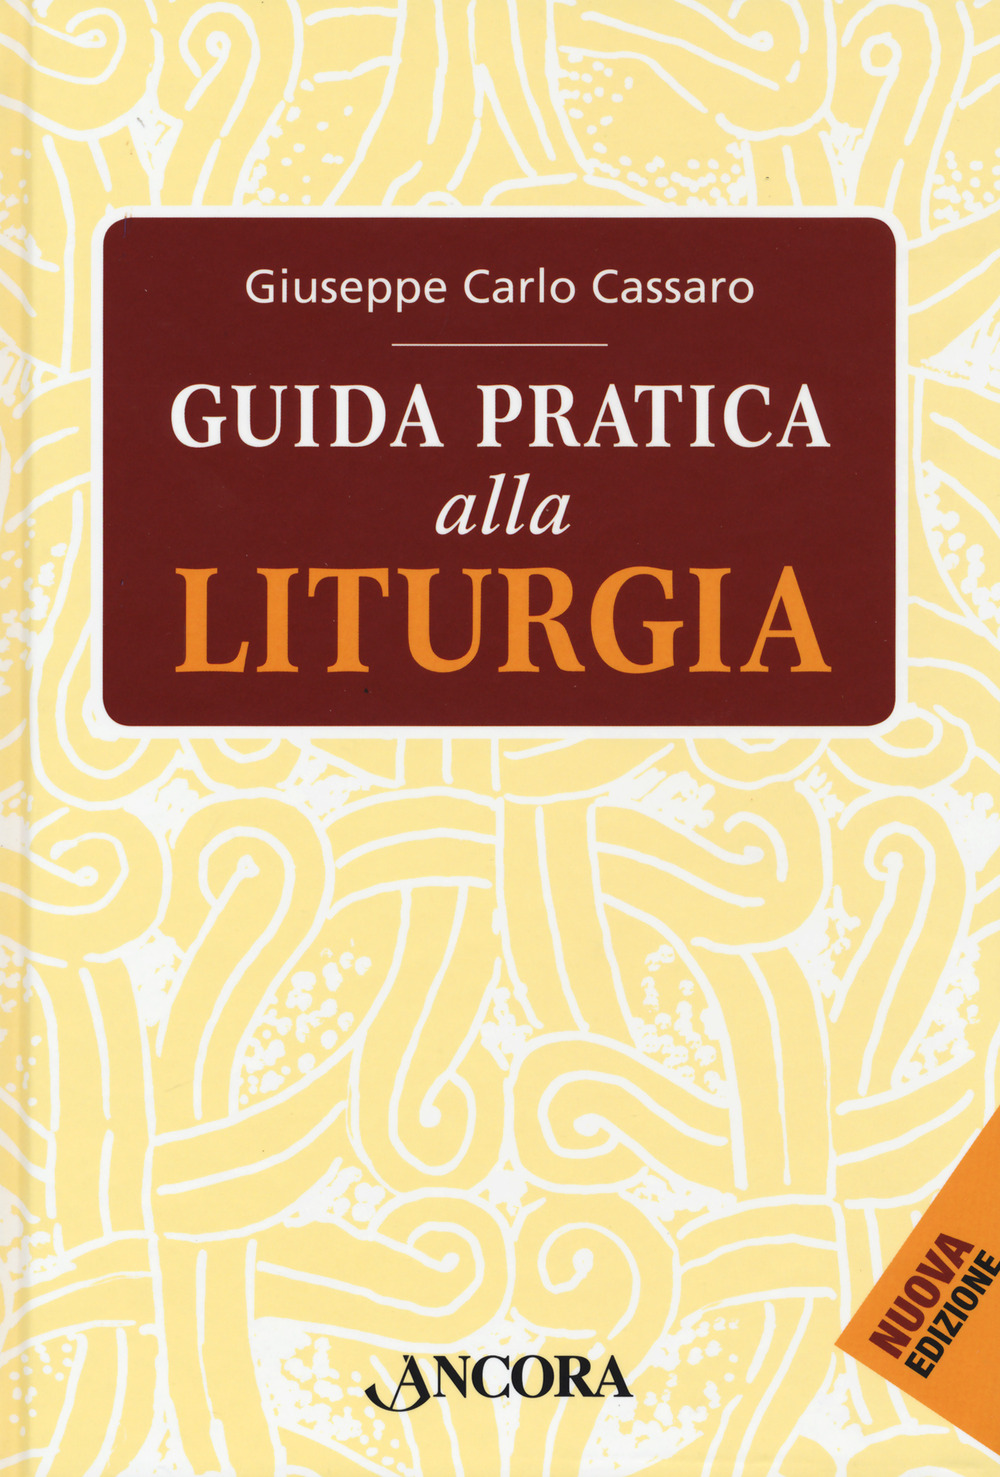 Libri Cassaro Giuseppe Carlo - Guida Pratica Alla Liturgia NUOVO SIGILLATO, EDIZIONE DEL 28/09/2021 SUBITO DISPONIBILE